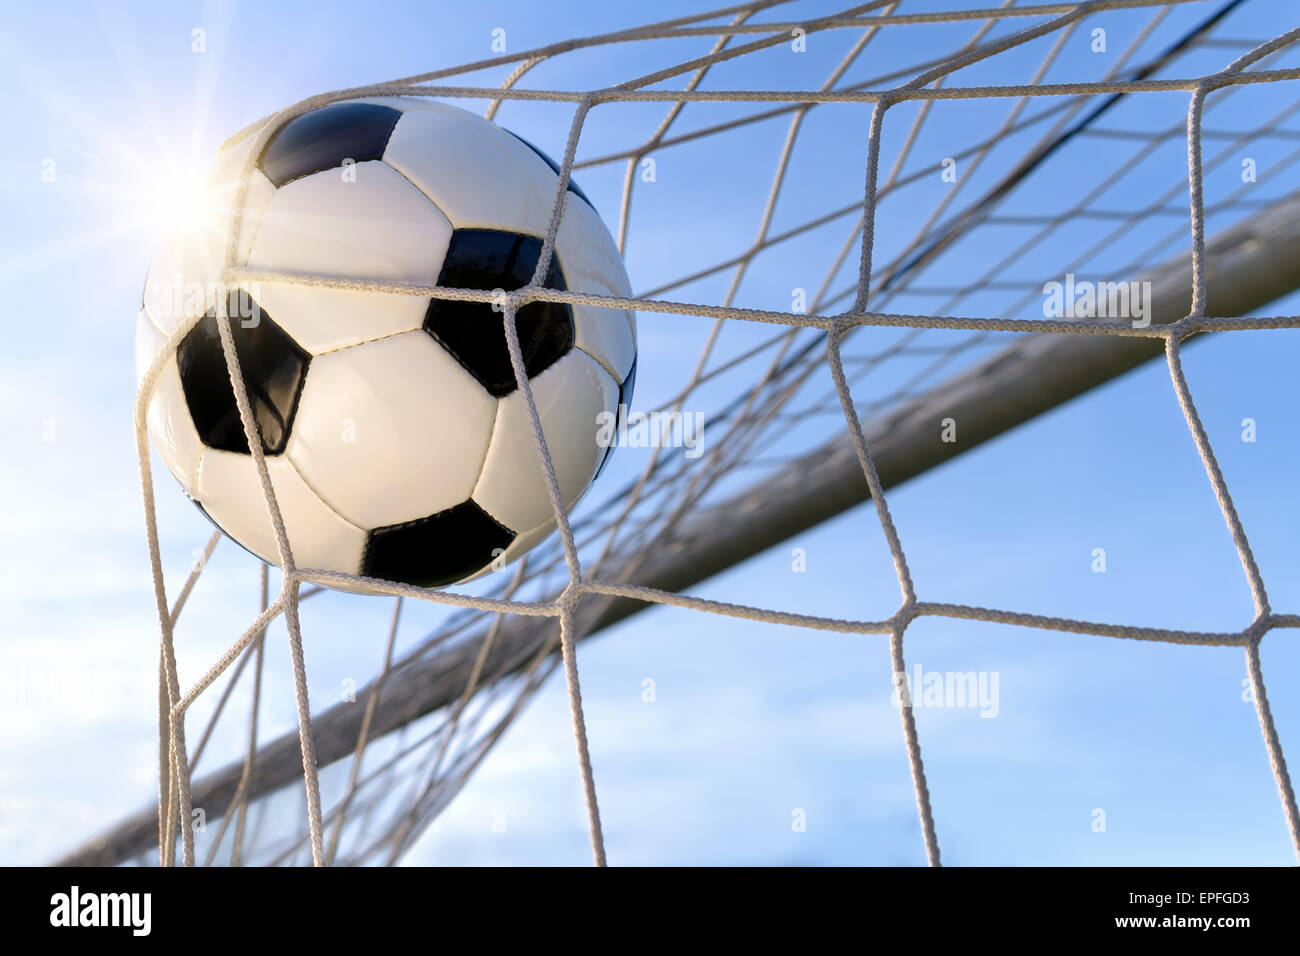 Fußball- oder Fußball Tor mit einem neutralen design Ball fliegen in die net, blauer Himmel und Sonne im Hintergrund Stockfoto